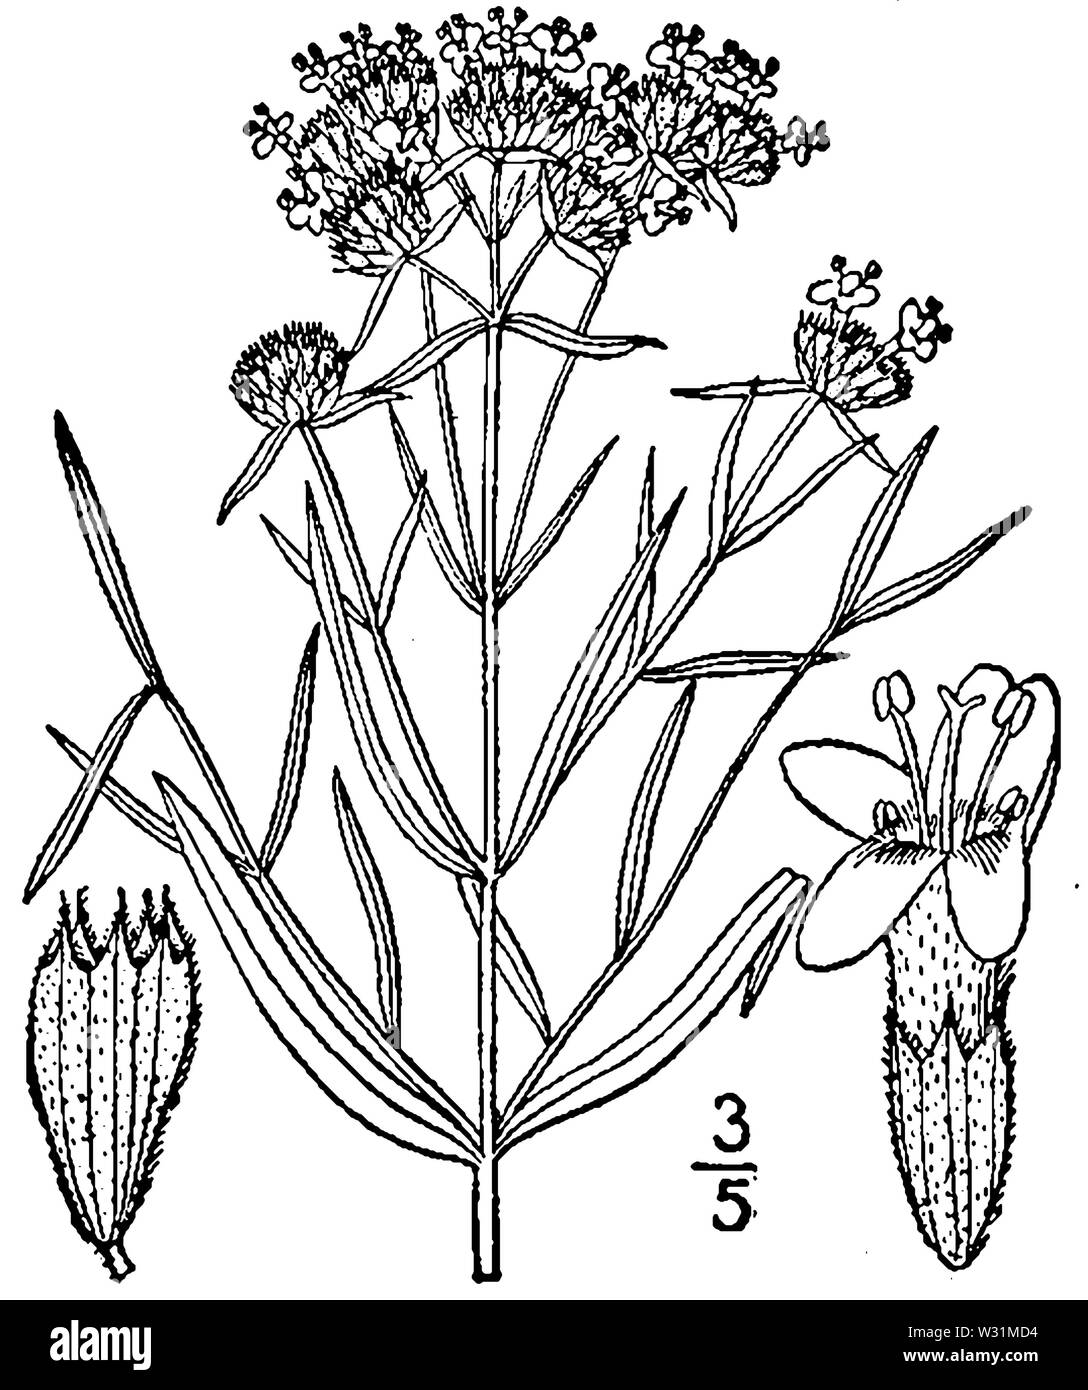 Pycnanthemum tenuifolium illustr Stock Photo